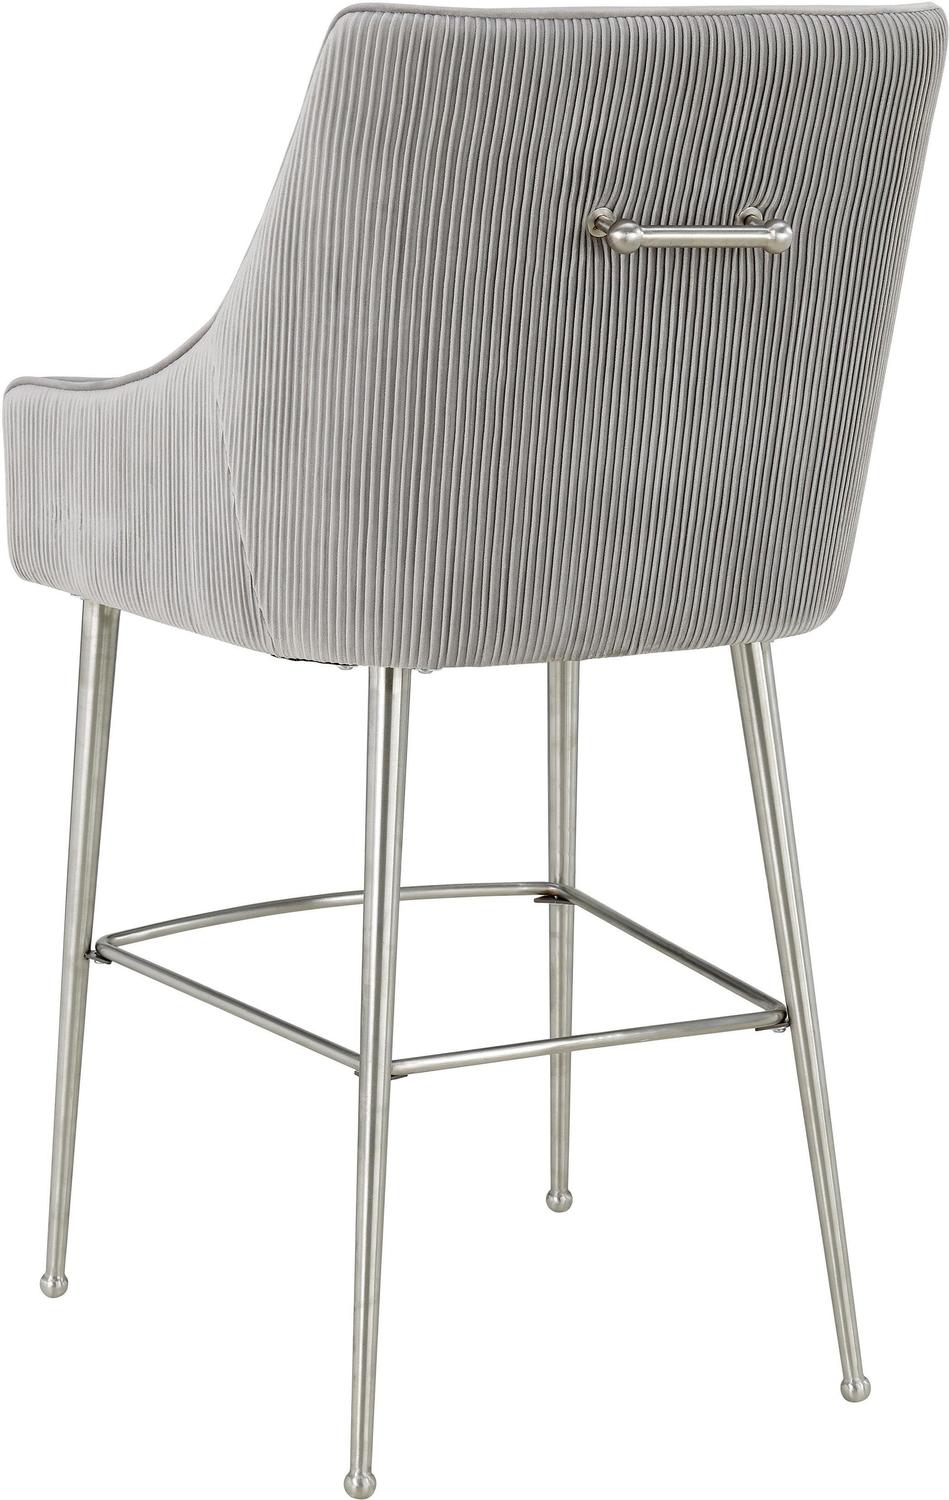 brown breakfast bar stools Tov Furniture Stools Light Grey